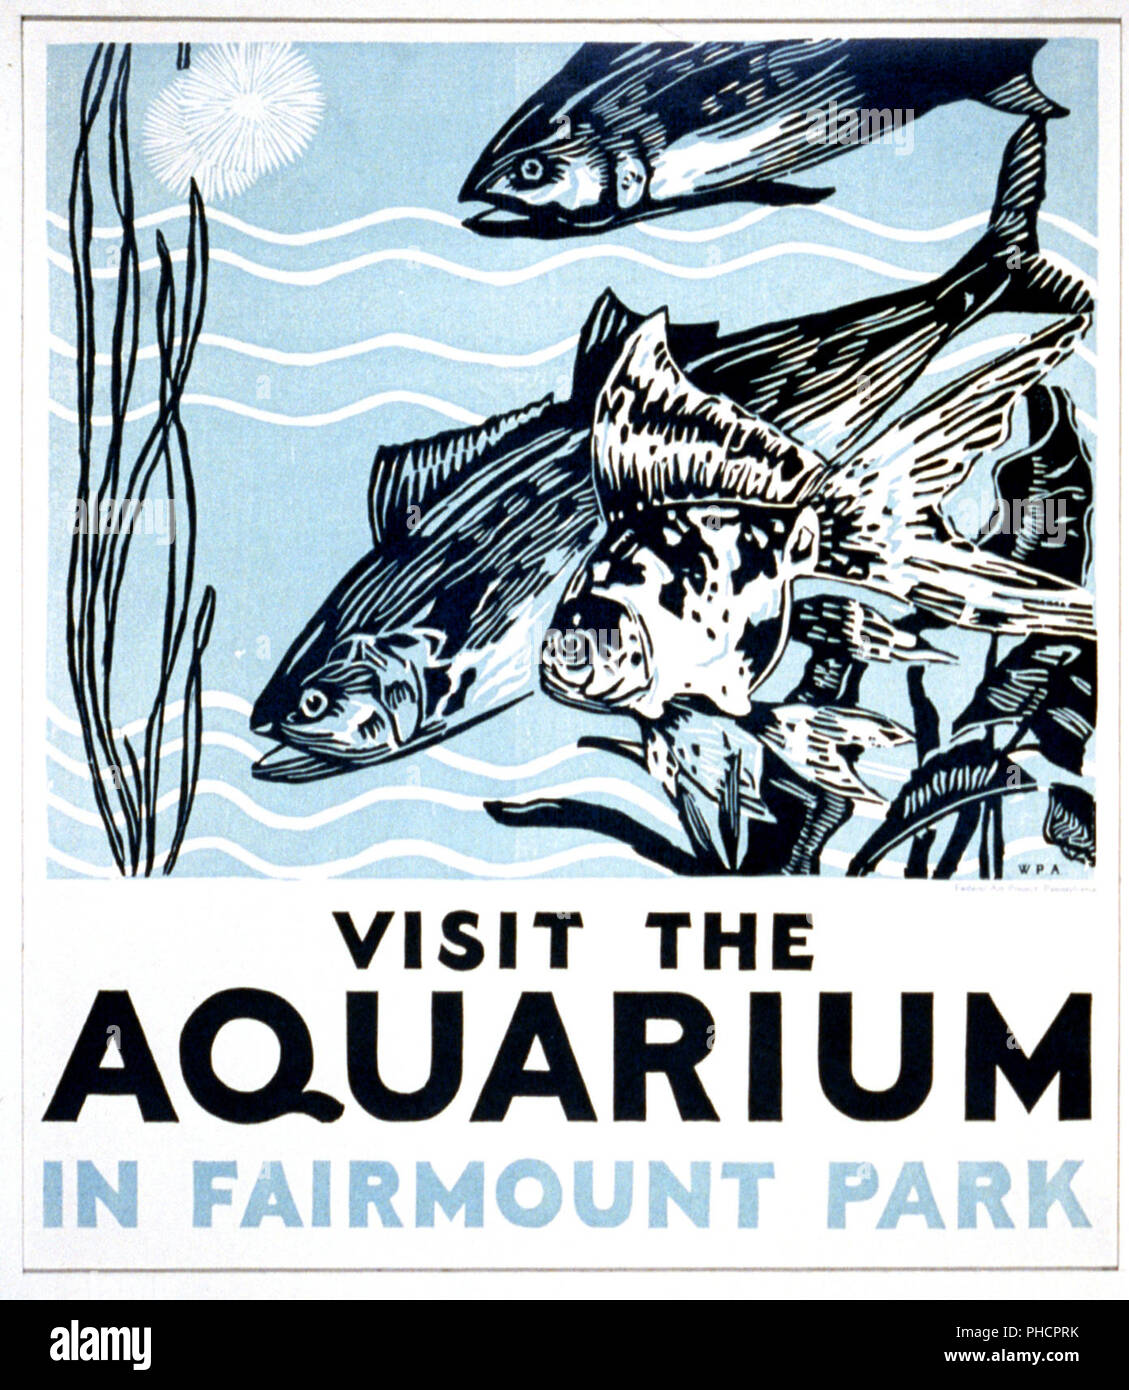 Cartel promueve el acuario en Fairmount Park como un lugar para visitar, mostrando el pescado. Foto de stock